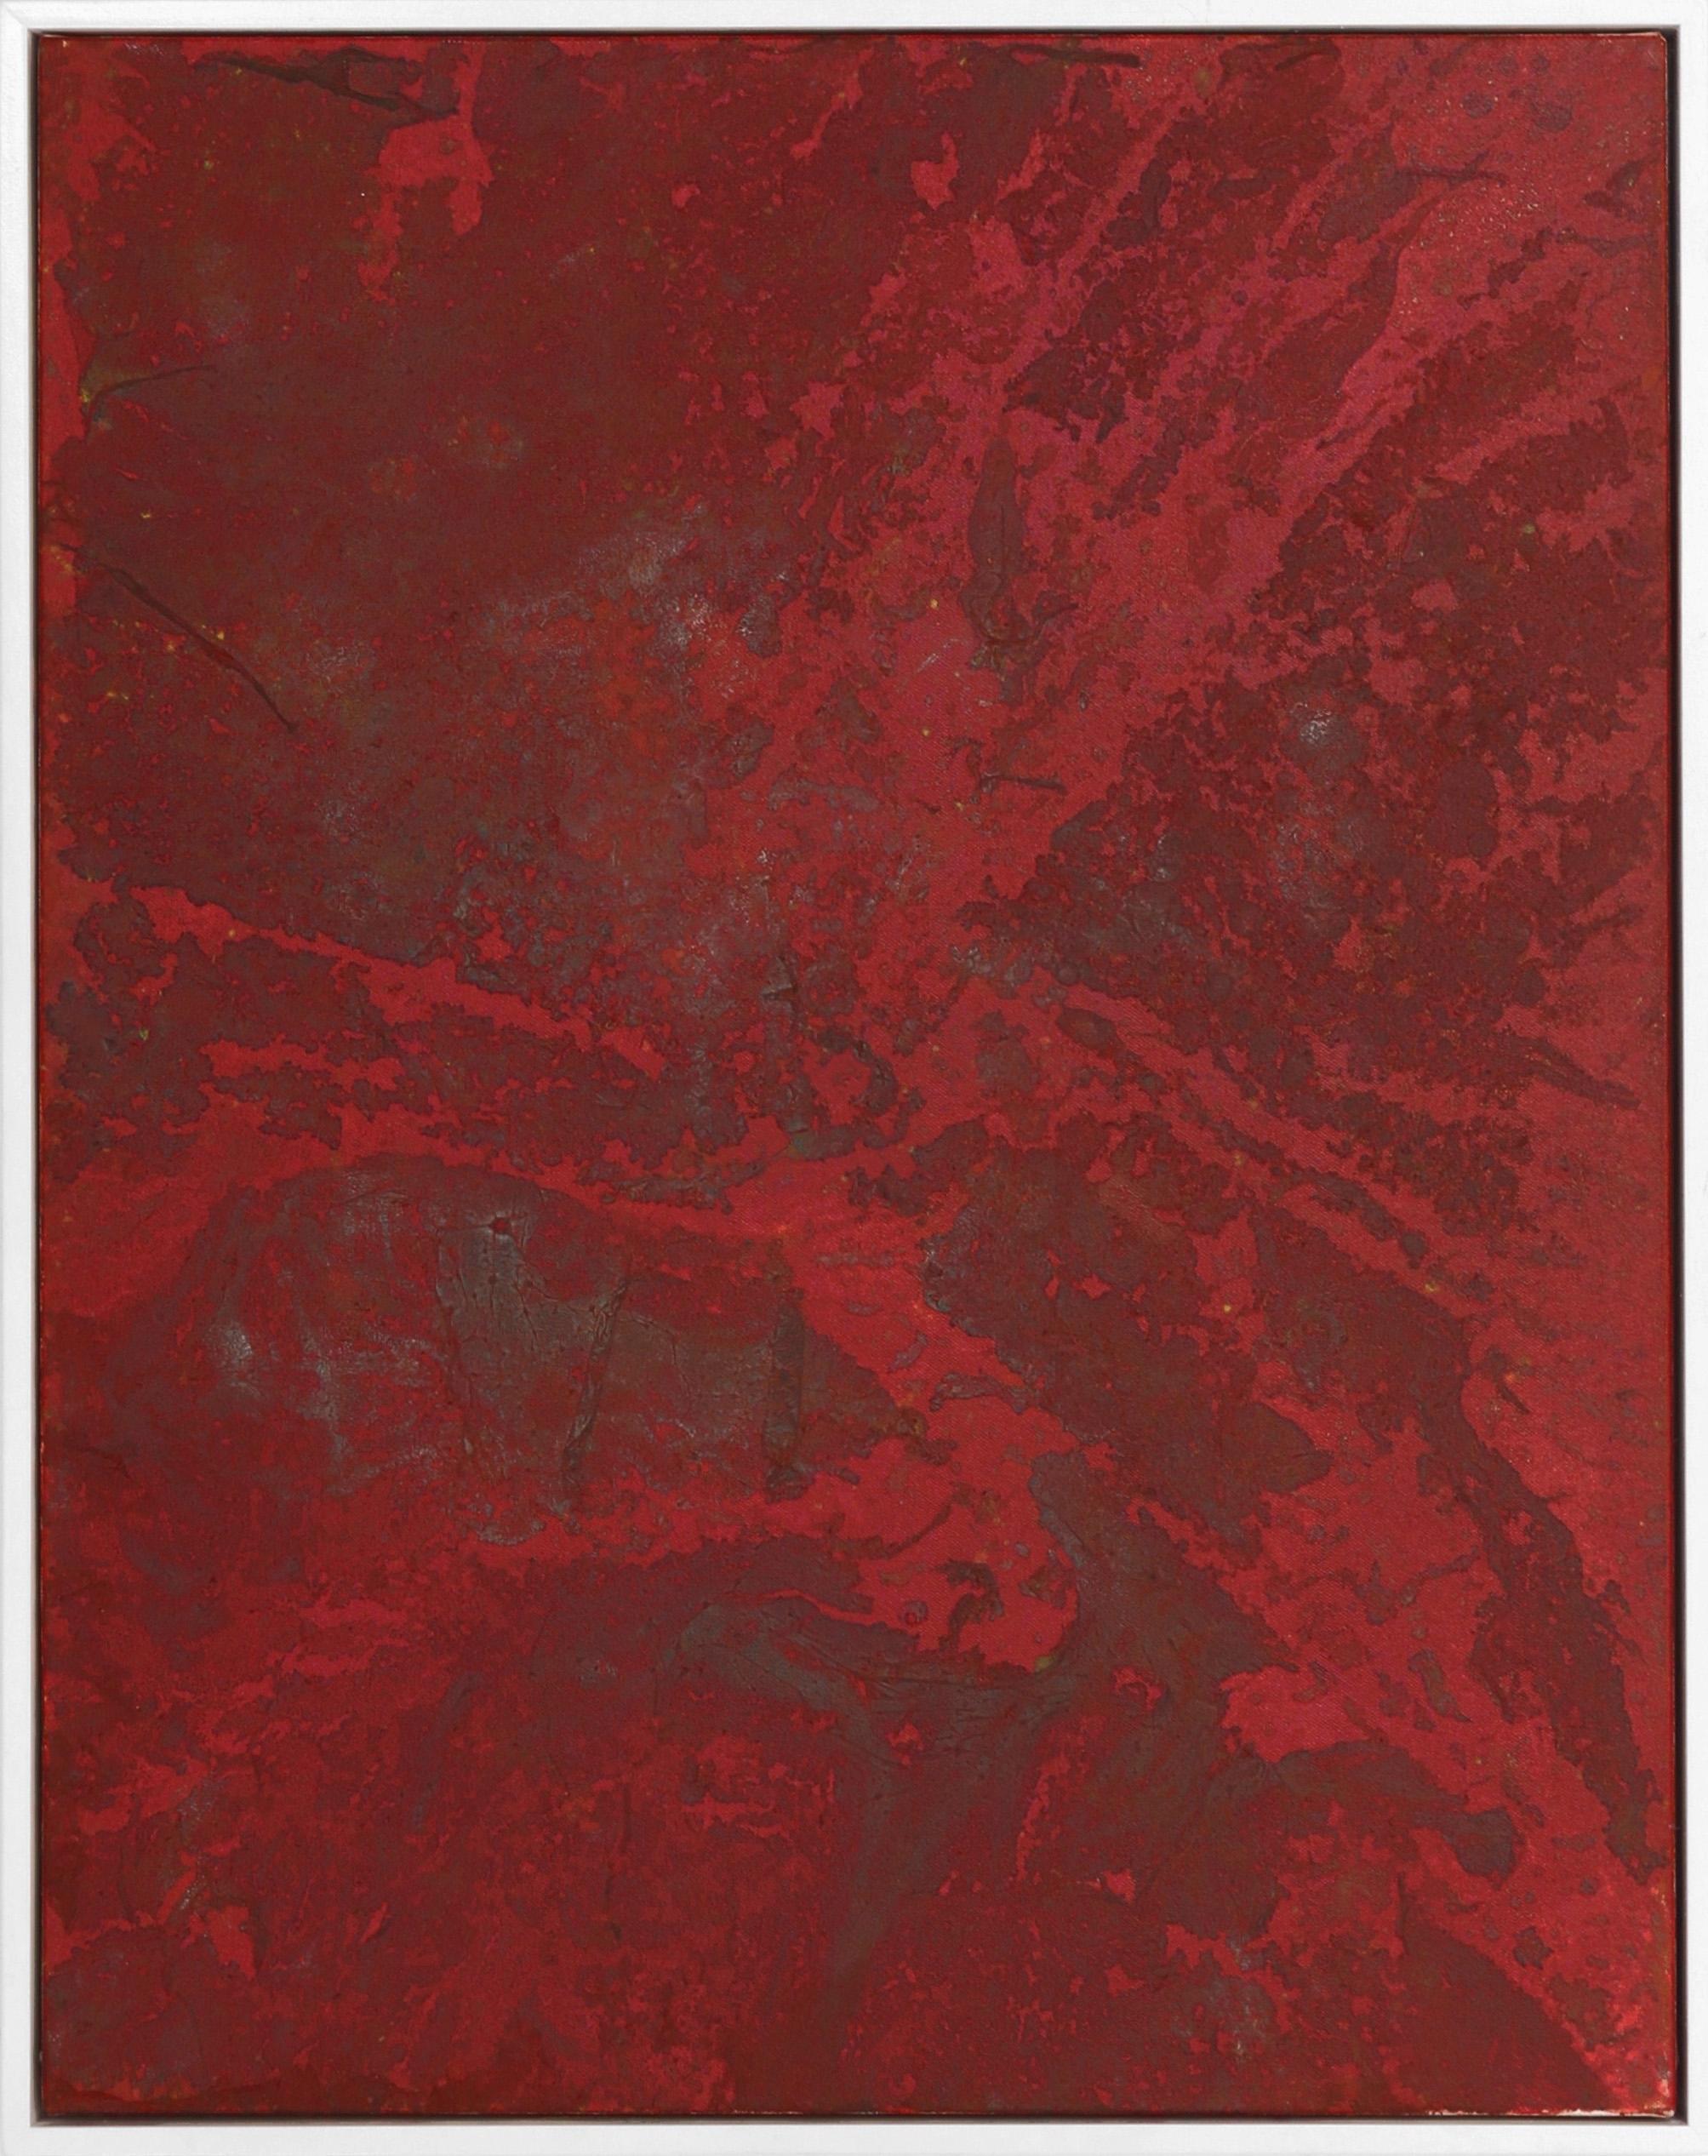 A312 - Minimalist Abstract Contemporary Original Red Textural Artwork - Mixed Media Art de Marco Schmidli